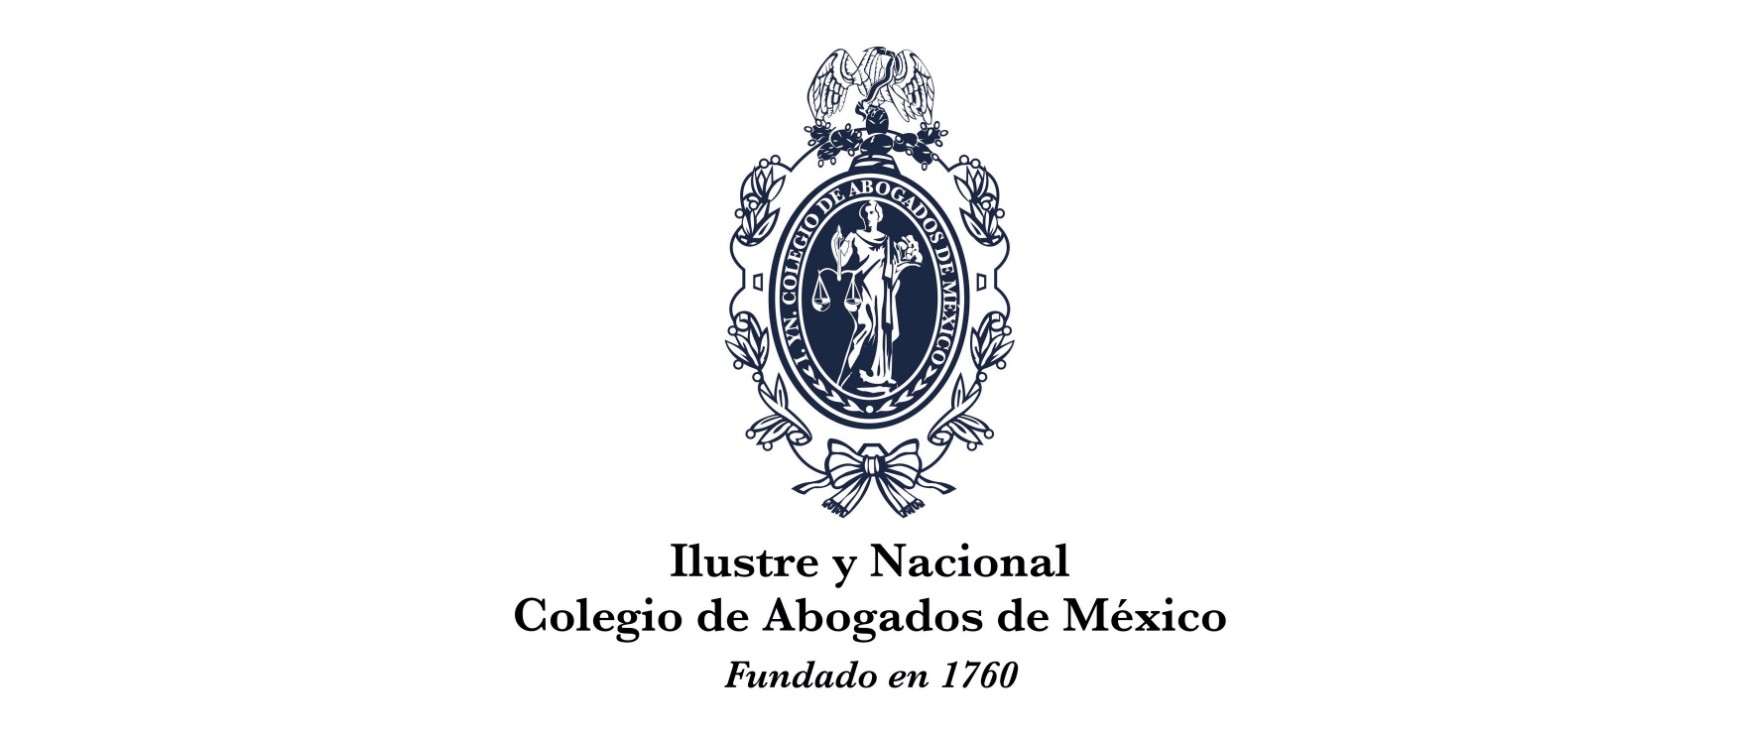 Ilustre y Nacional Colegio de Abogados de México (INCAM) 